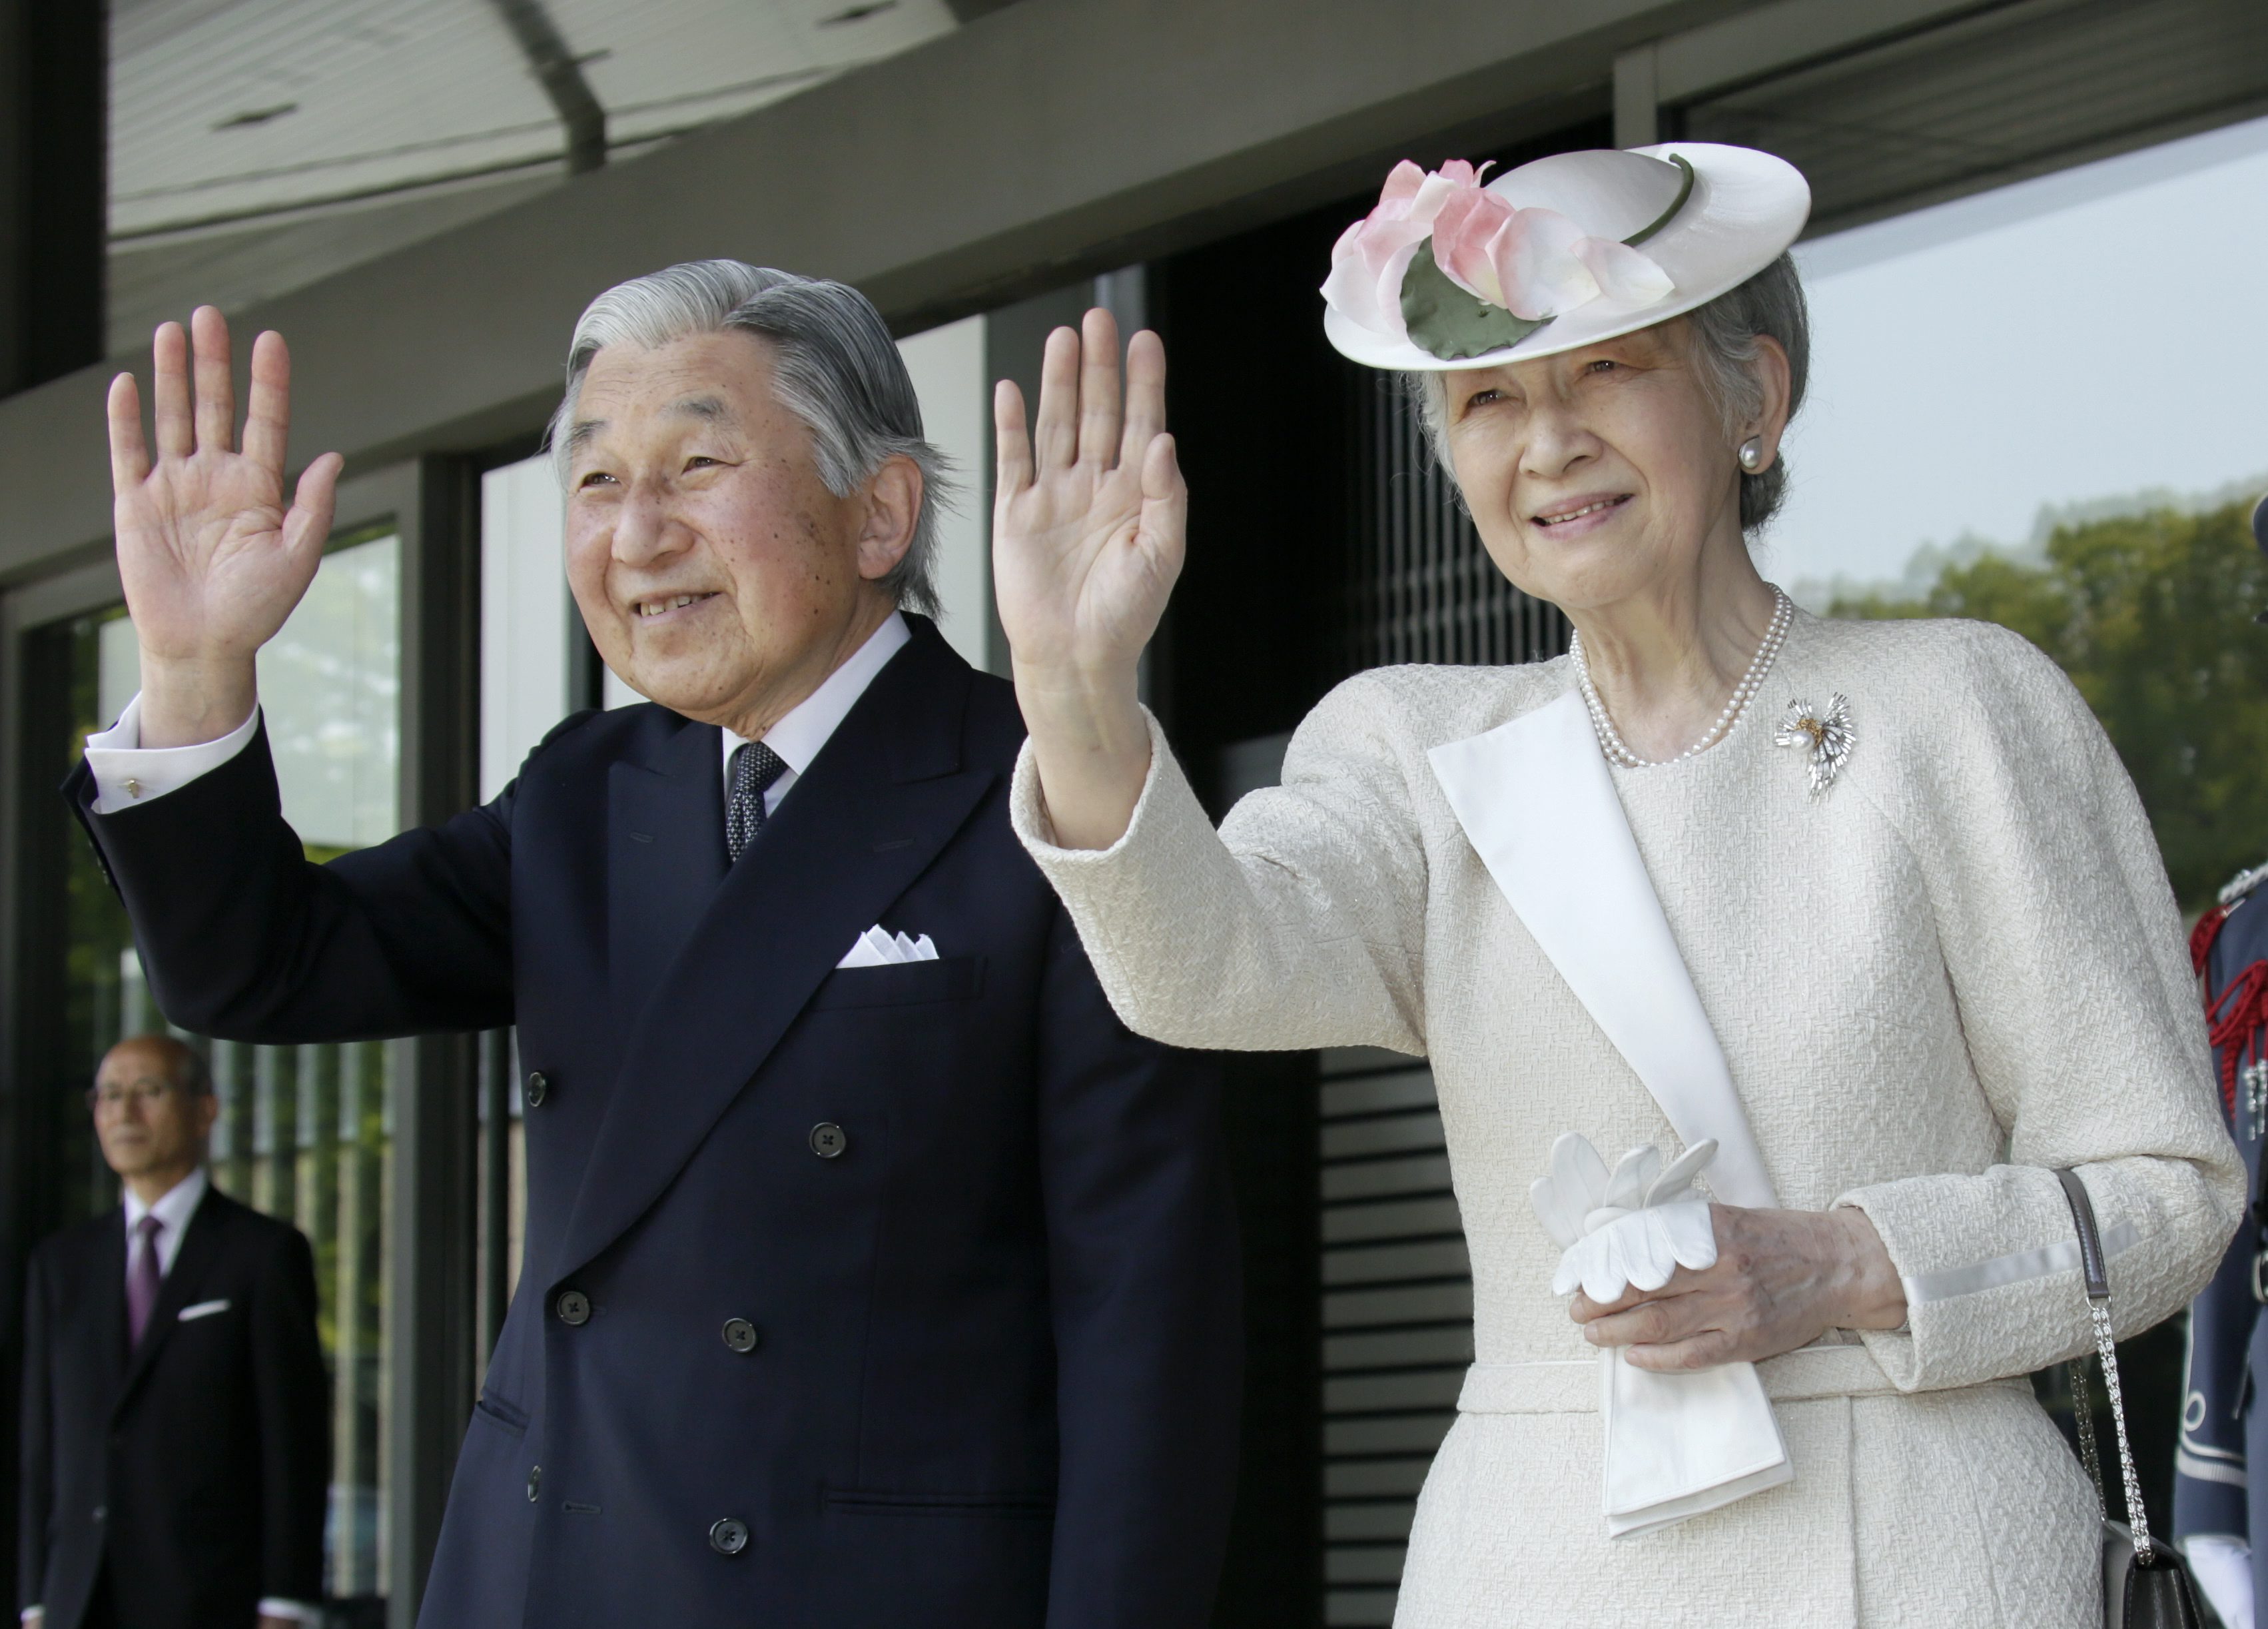 Ο αυτοκράτορας της Ιαπωνίας σκέφτεται να παραιτηθεί υπέρ του διαδόχου